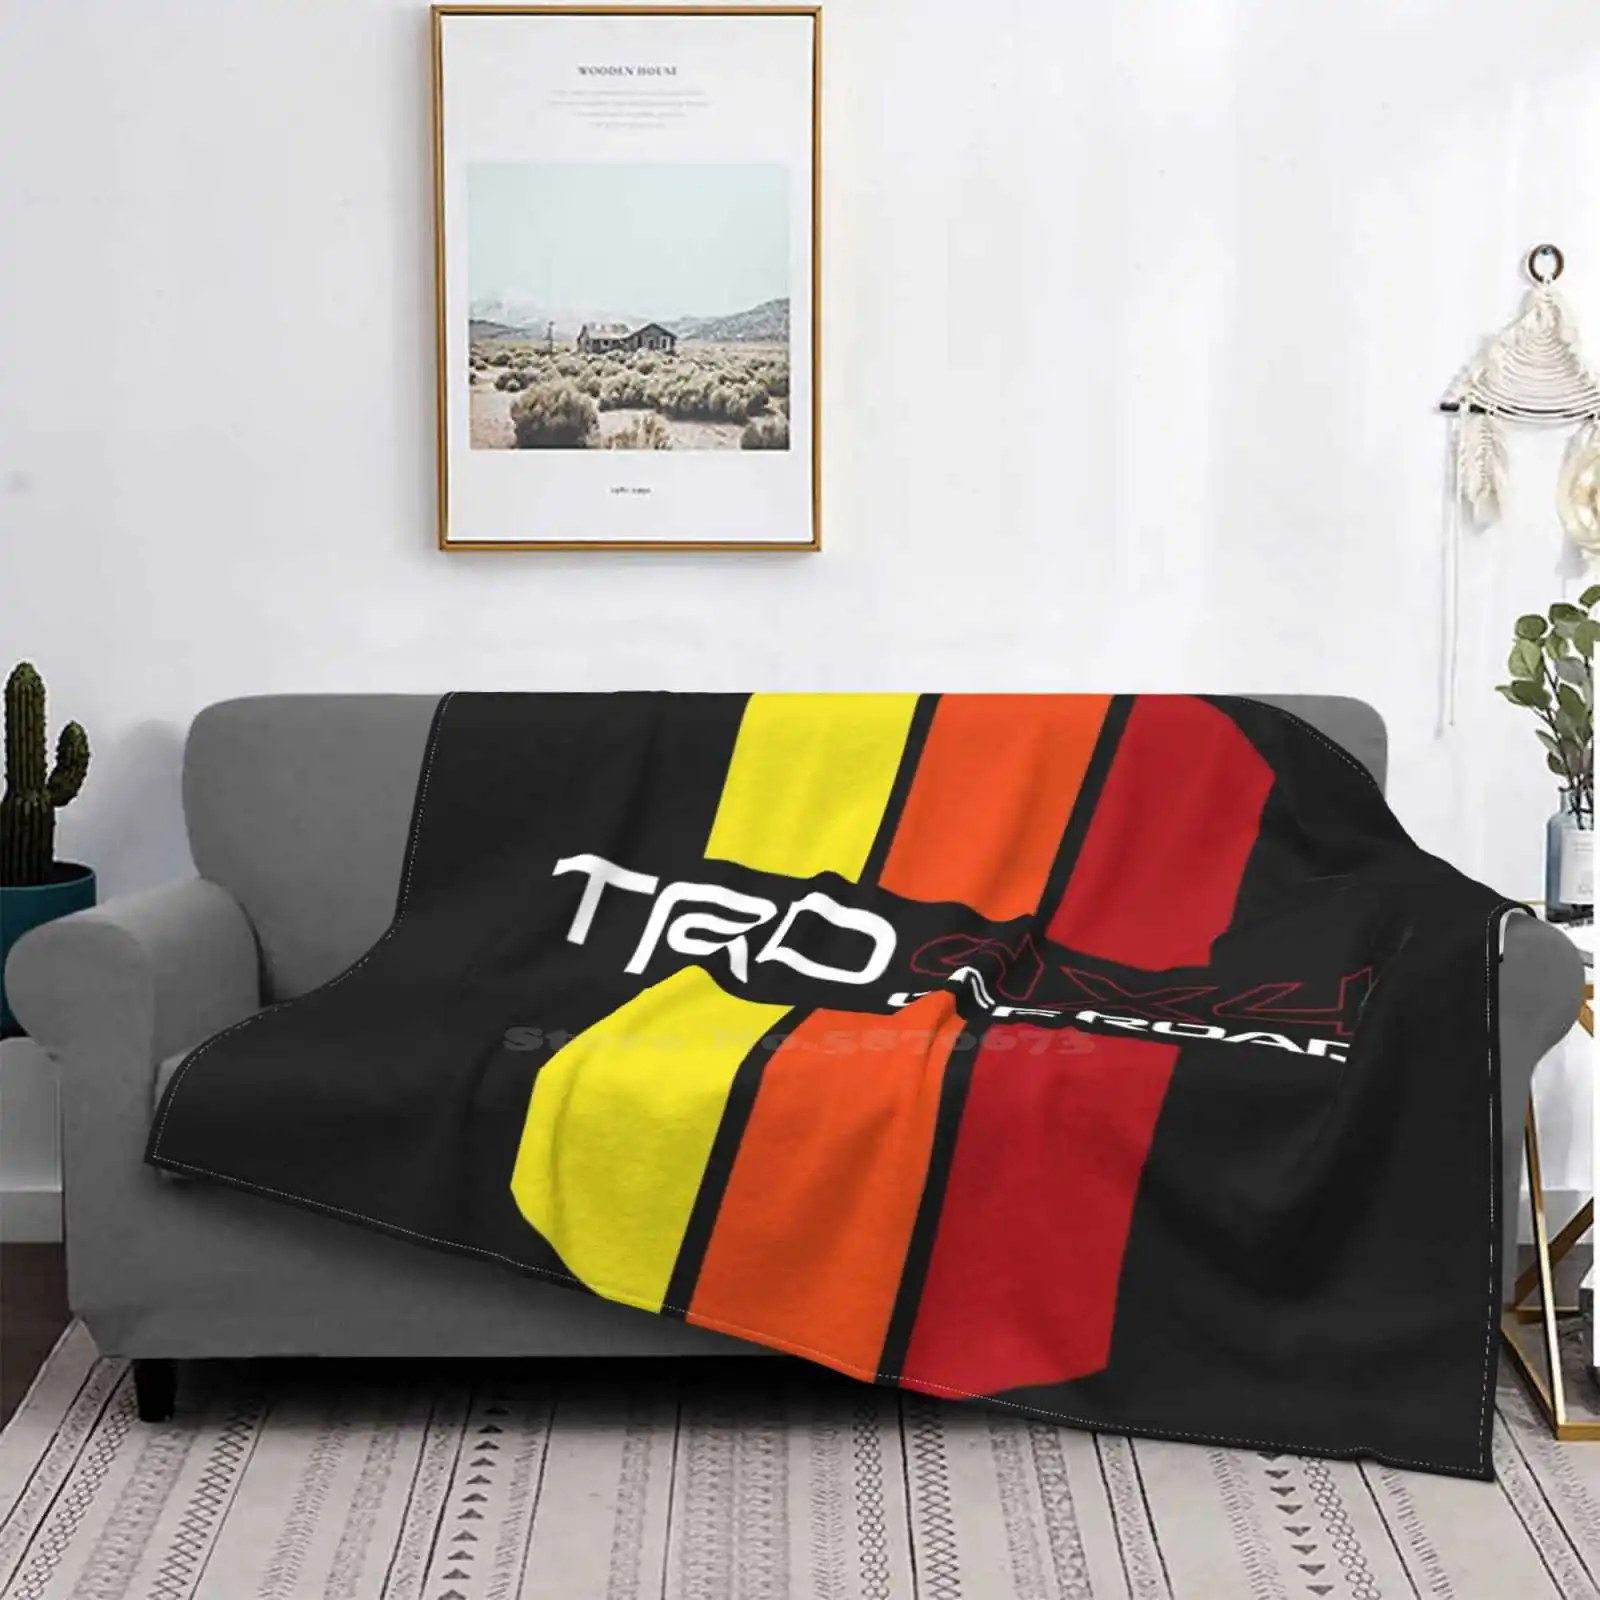 

Trd Pro 4 бегунок Ретро полосы значок Винтаж Sr5 Pro 5-го поколения супер теплые мягкие одеяла диванные на диван/кровать/Путешествие 4runner